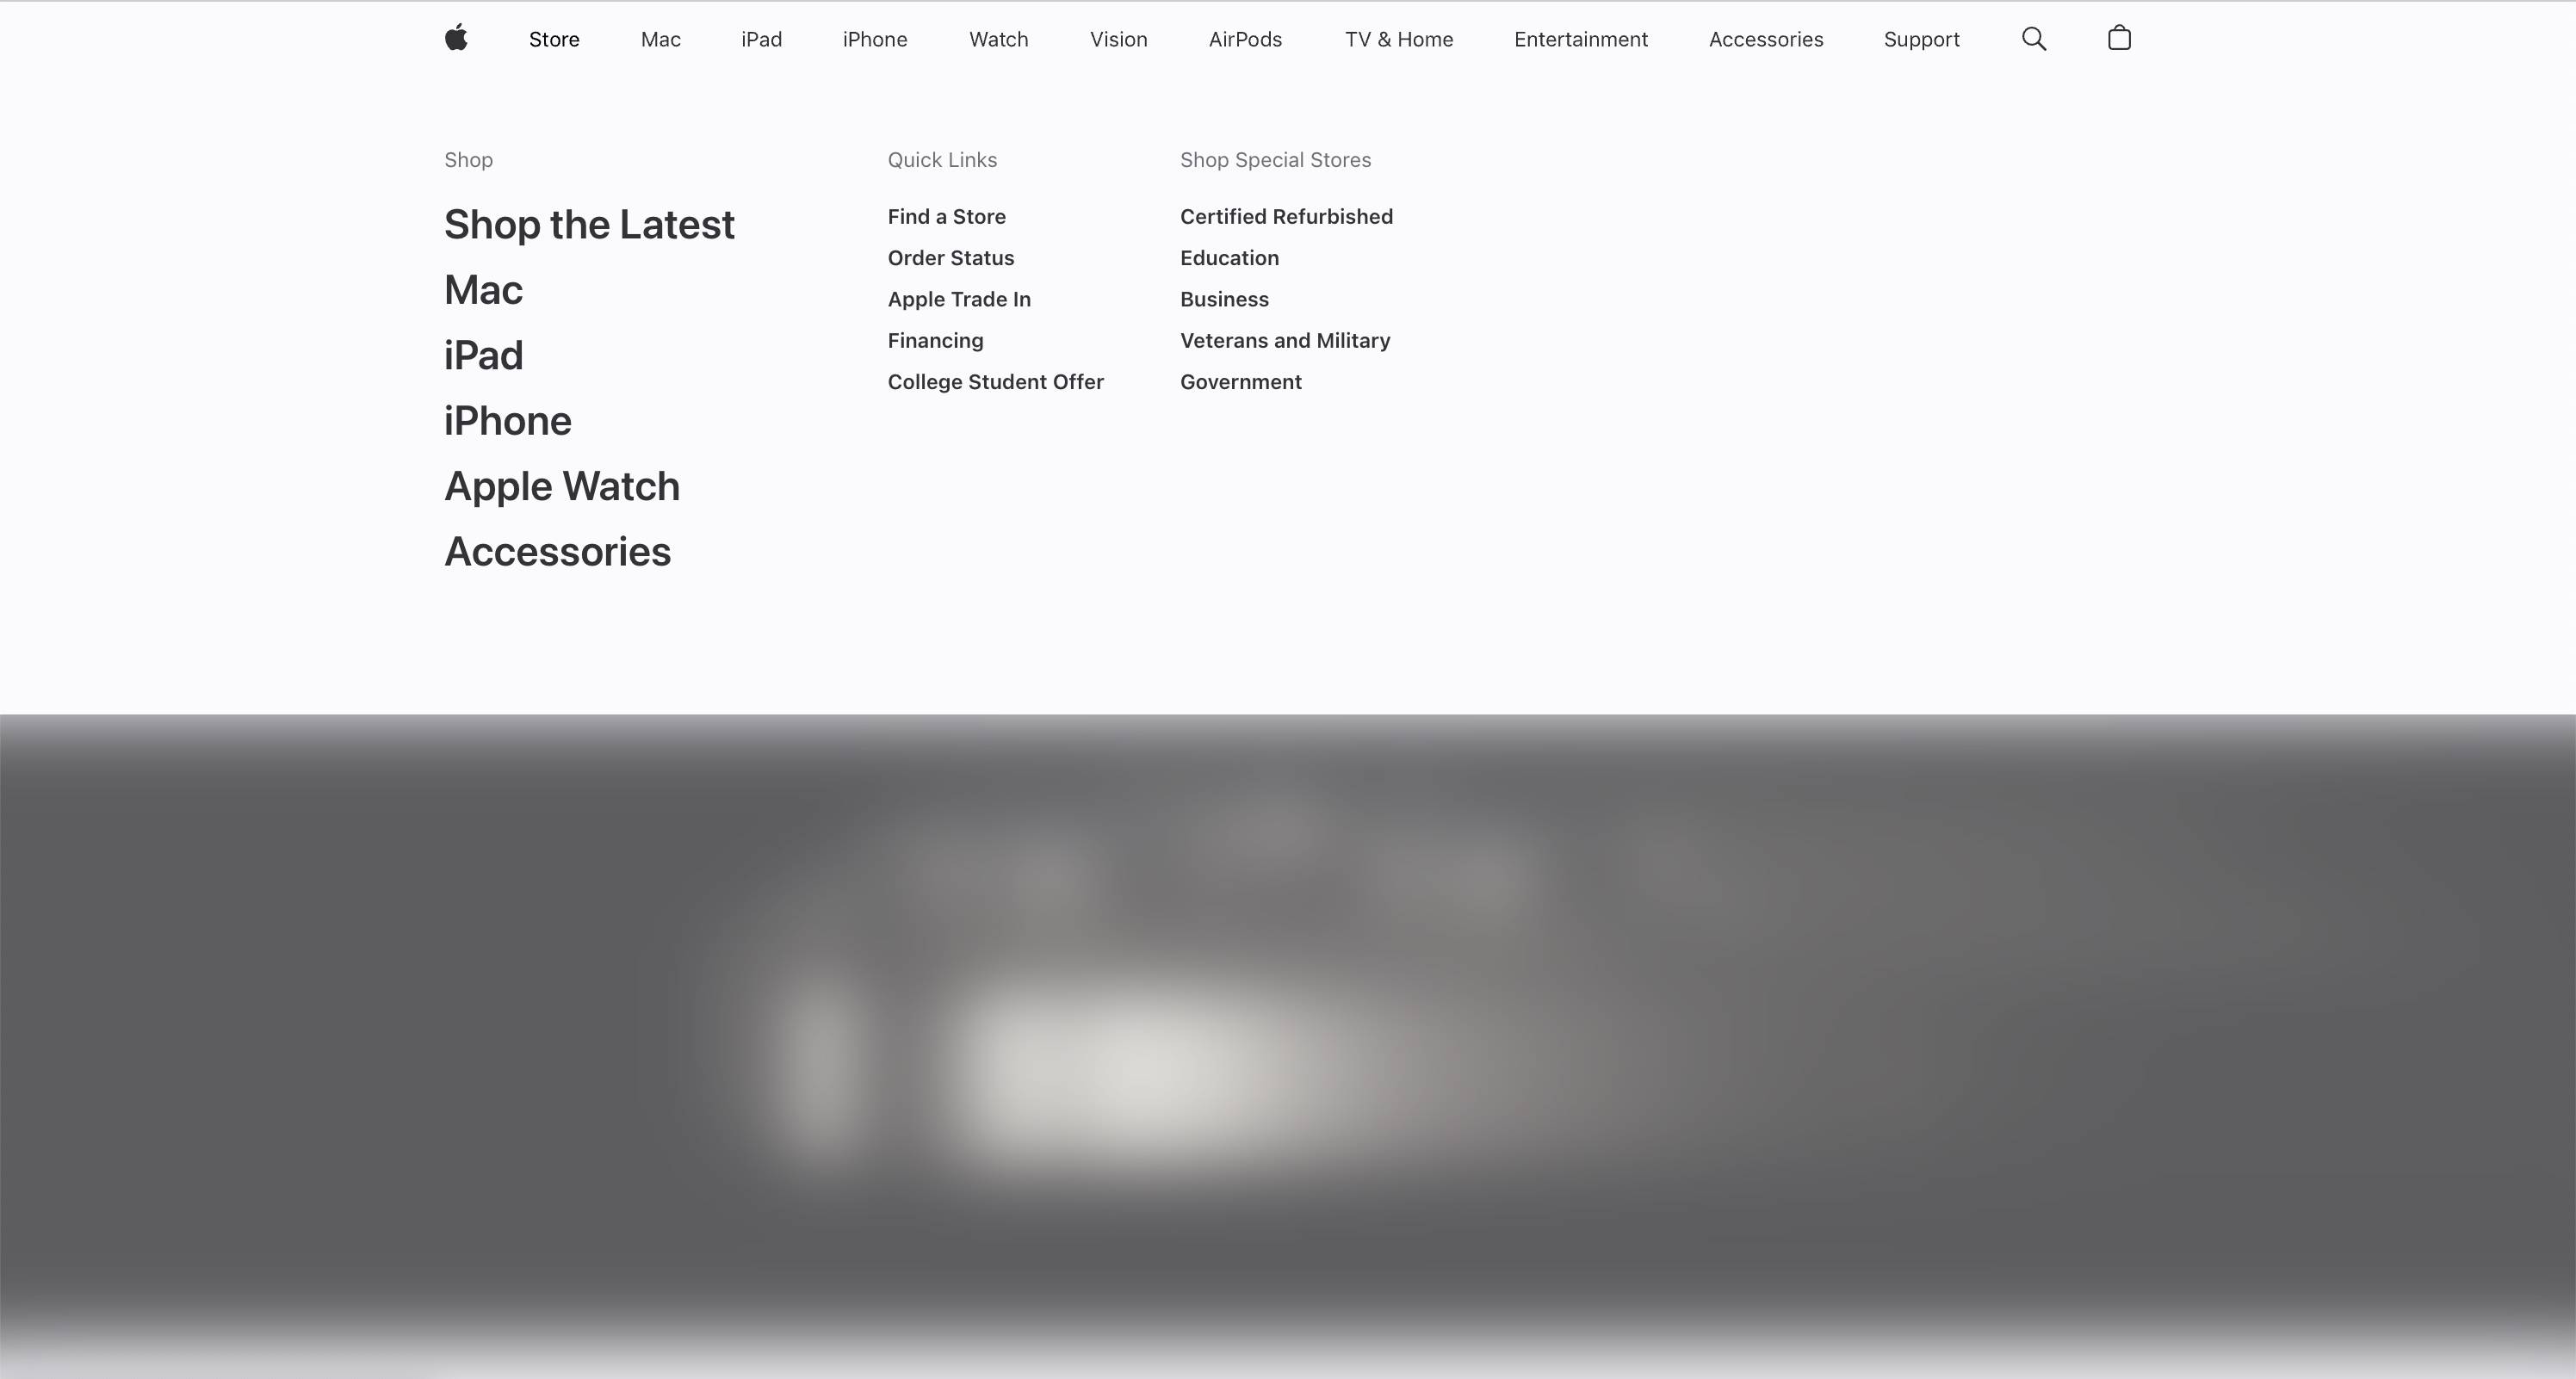 screenshot of the mega menu dropdown used for navigation on Apple's website